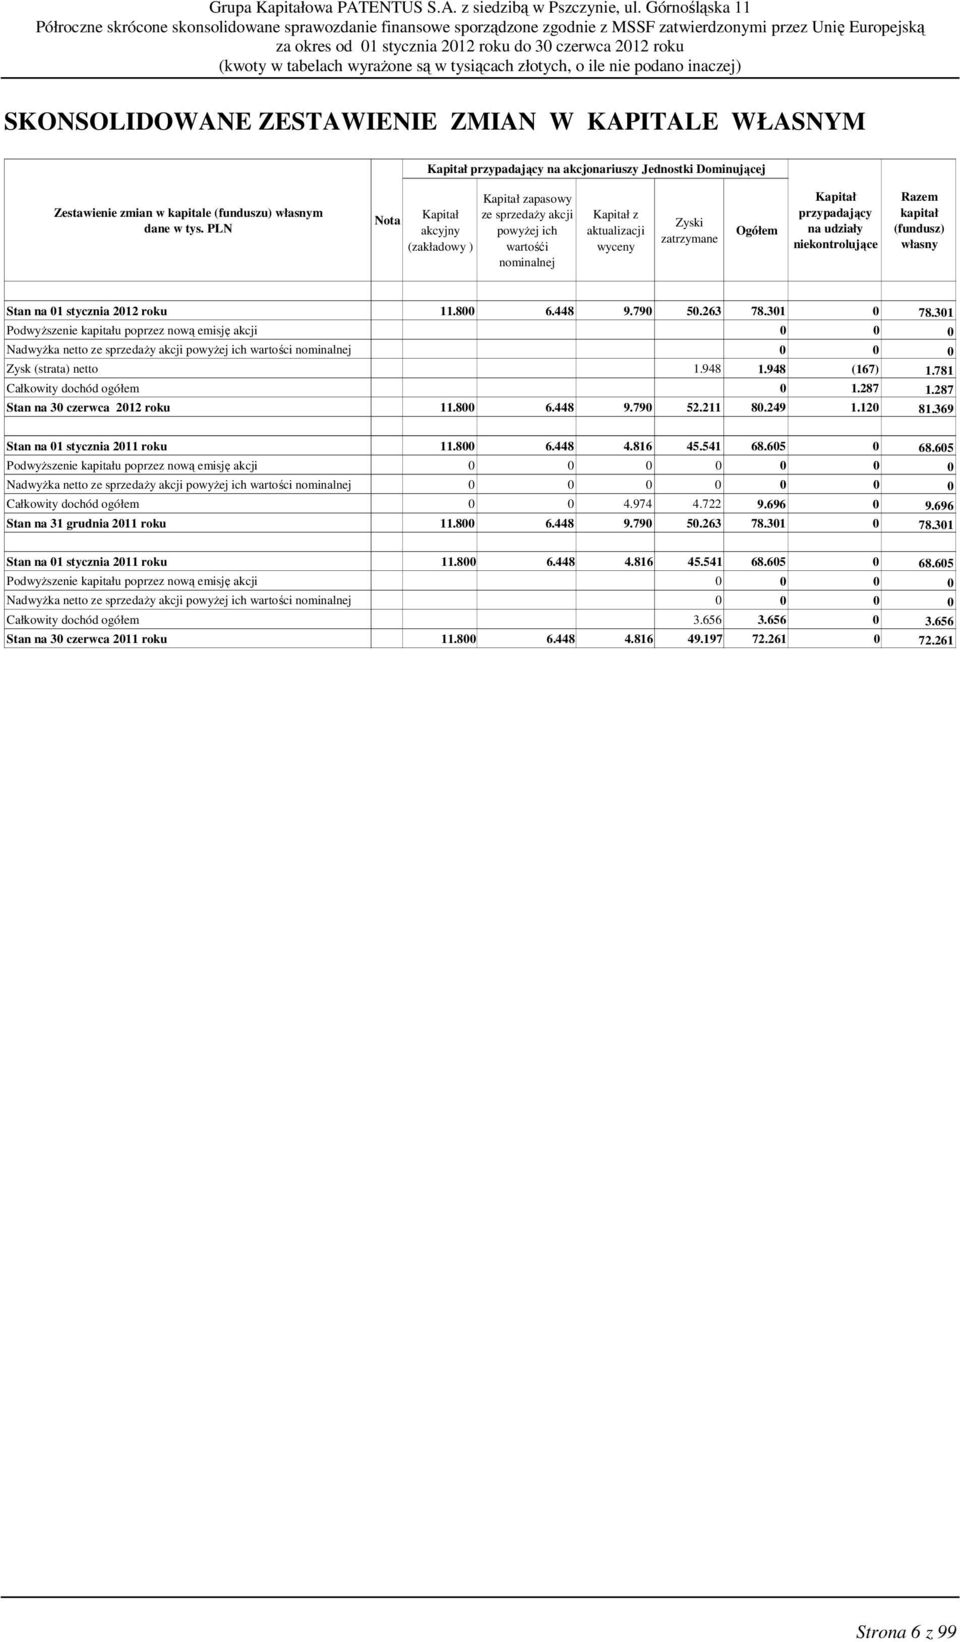 niekontrolujące Razem kapitał (fundusz) własny Stan na 01 stycznia 2012 roku 11.800 6.448 9.790 50.263 78.301 0 78.